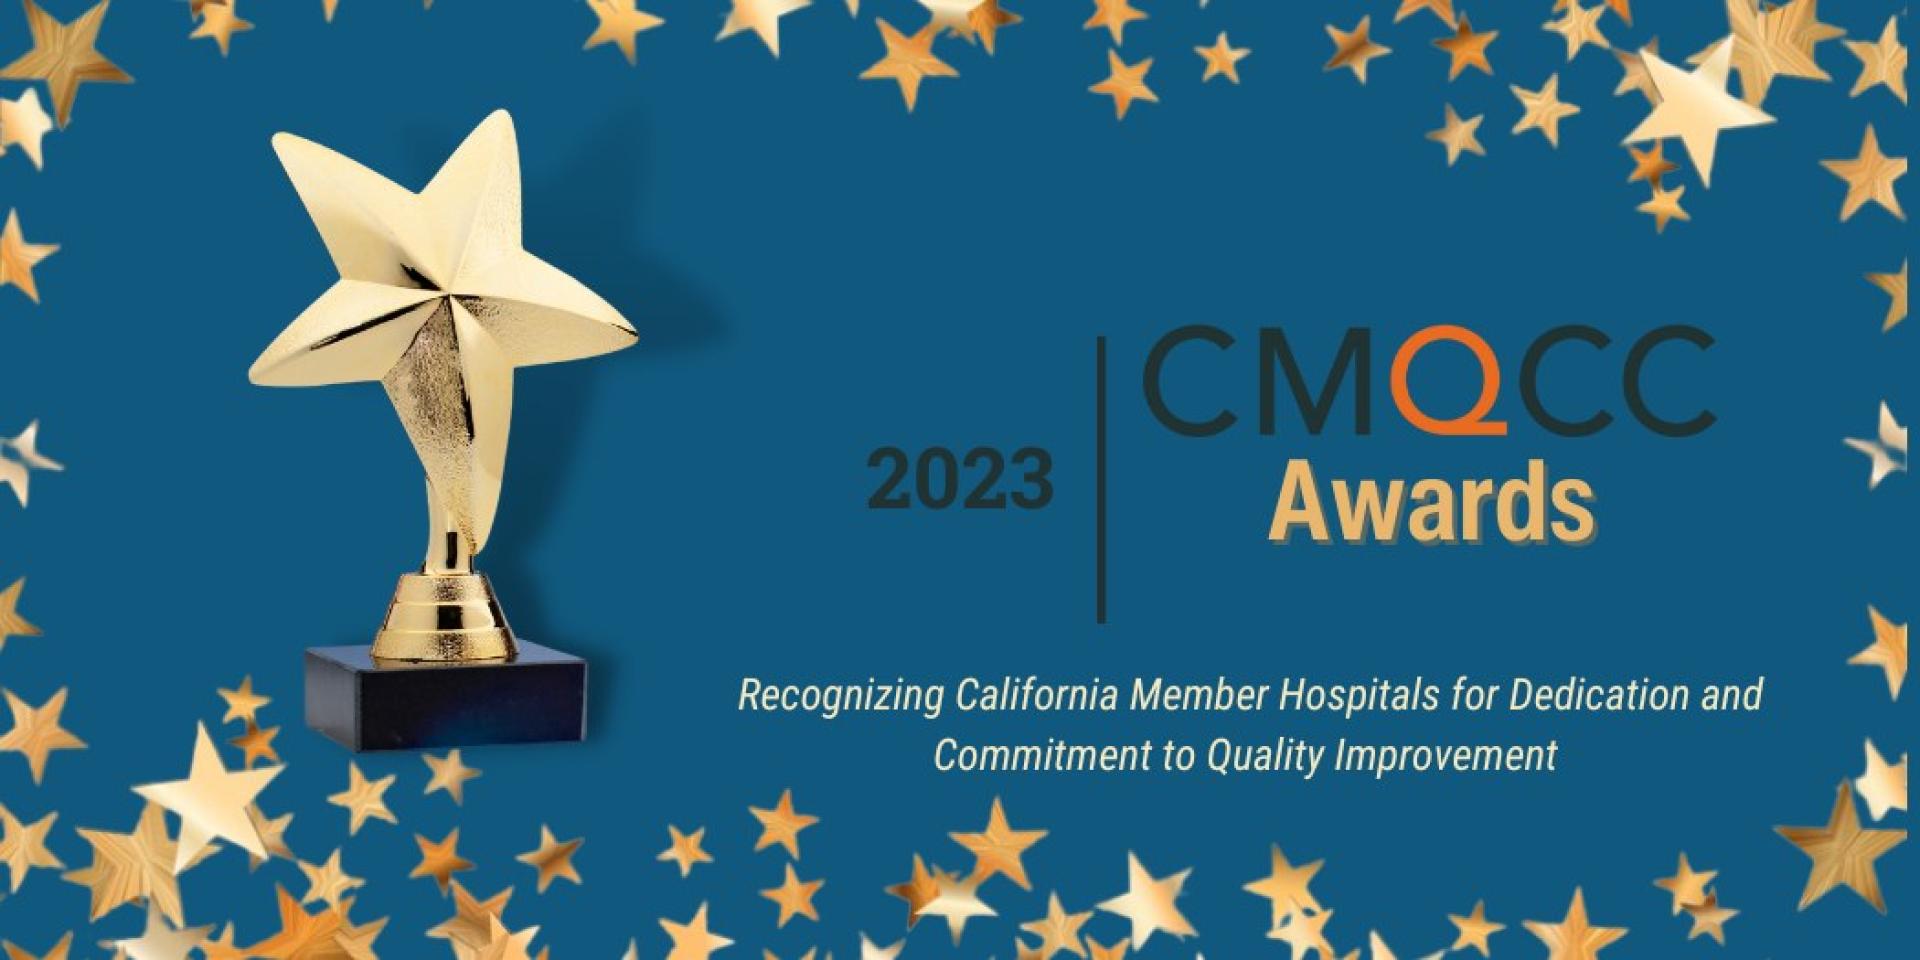 2023 CMQCC Awards